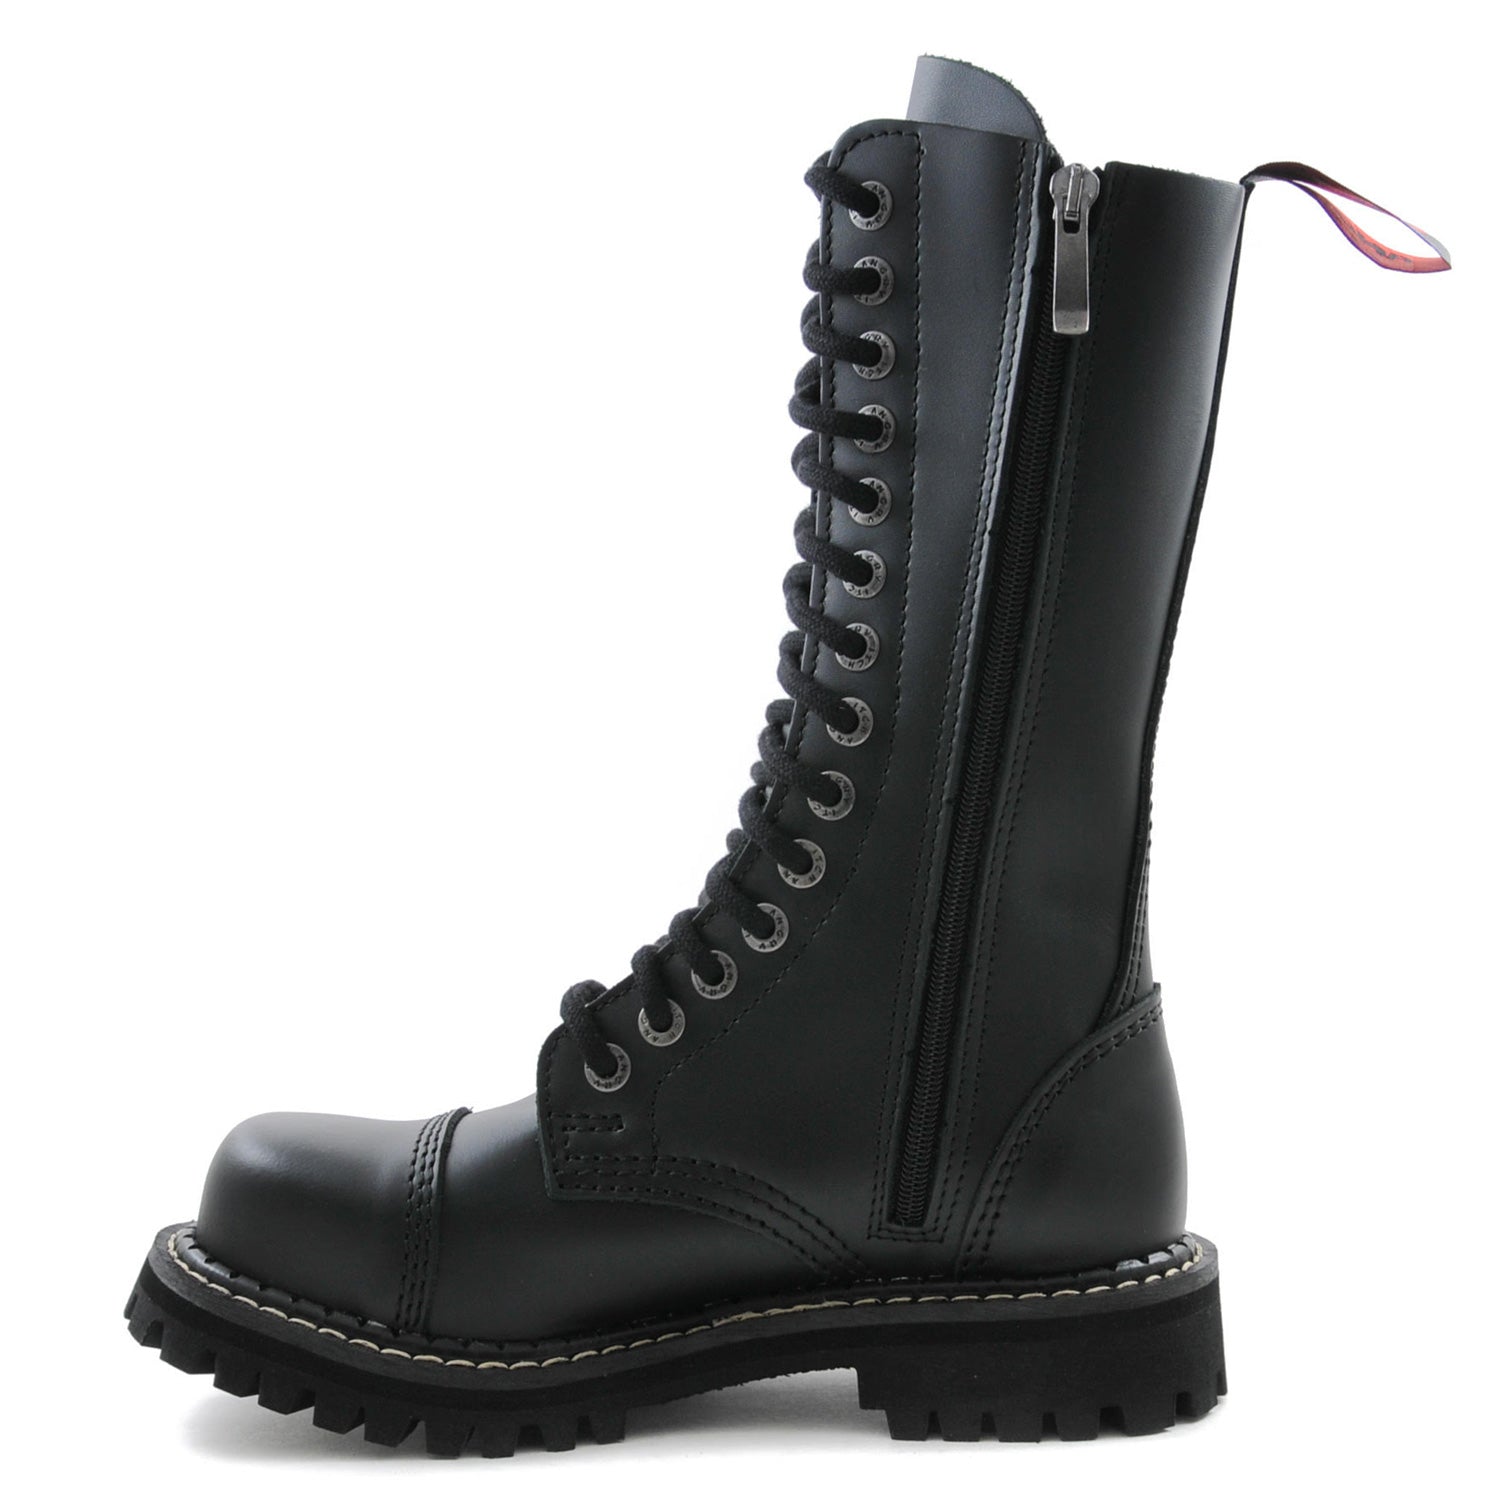 Schwarzer 14 Loch-Stiefel aus Leder mit innenliegendem Reißverschluss